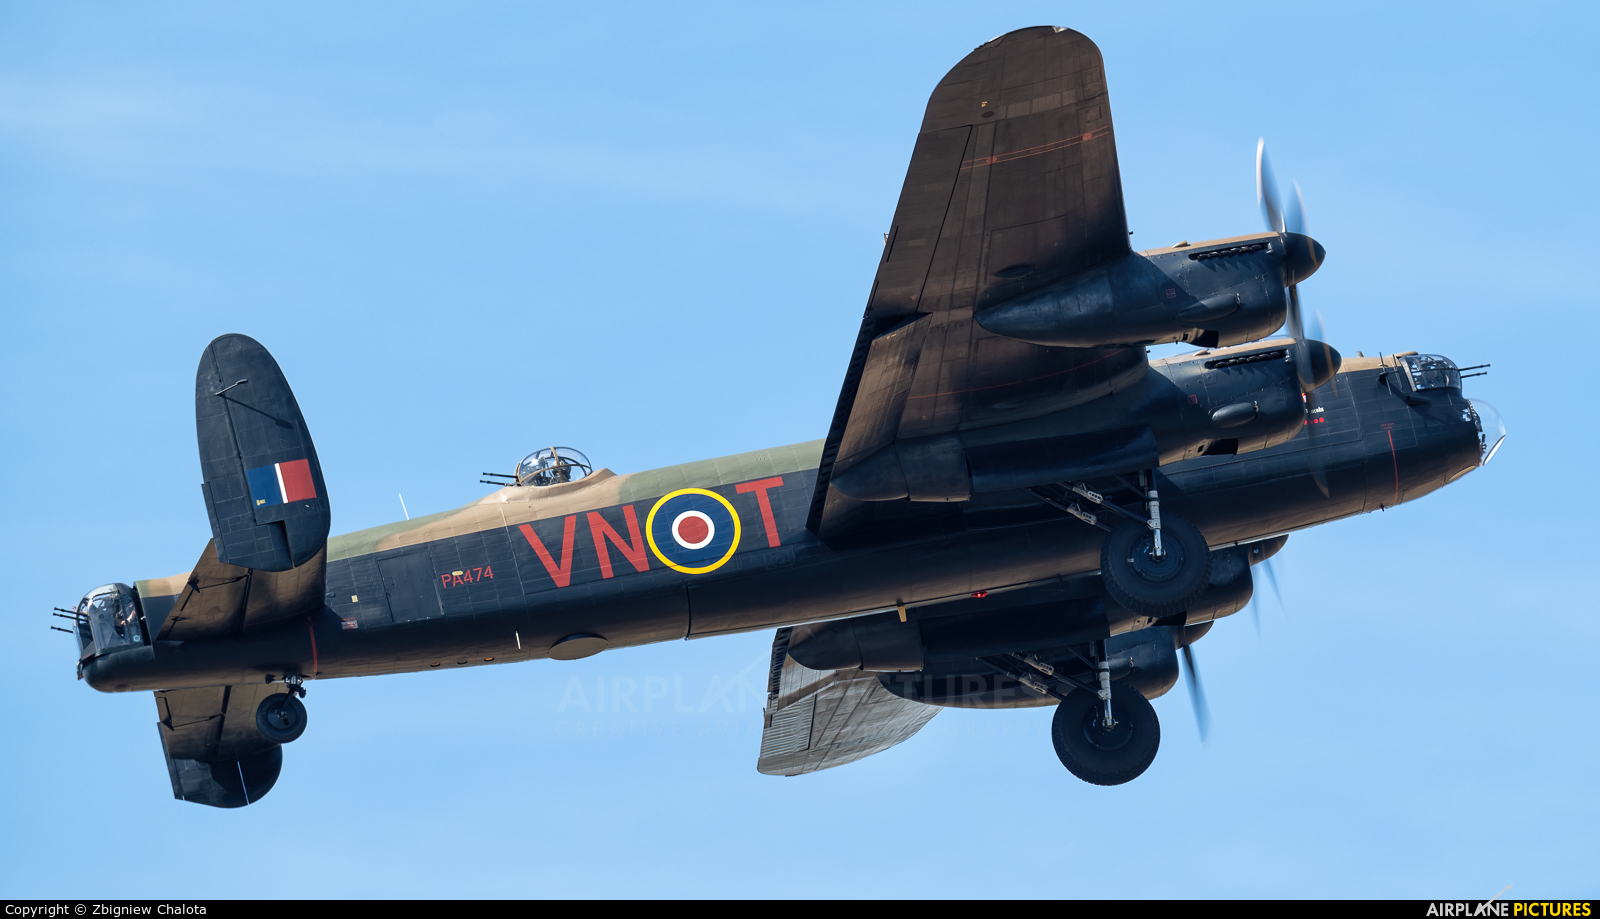 Royal Air Force "Battle of Britain Memorial Flight" PA474 aircraft at Fairford